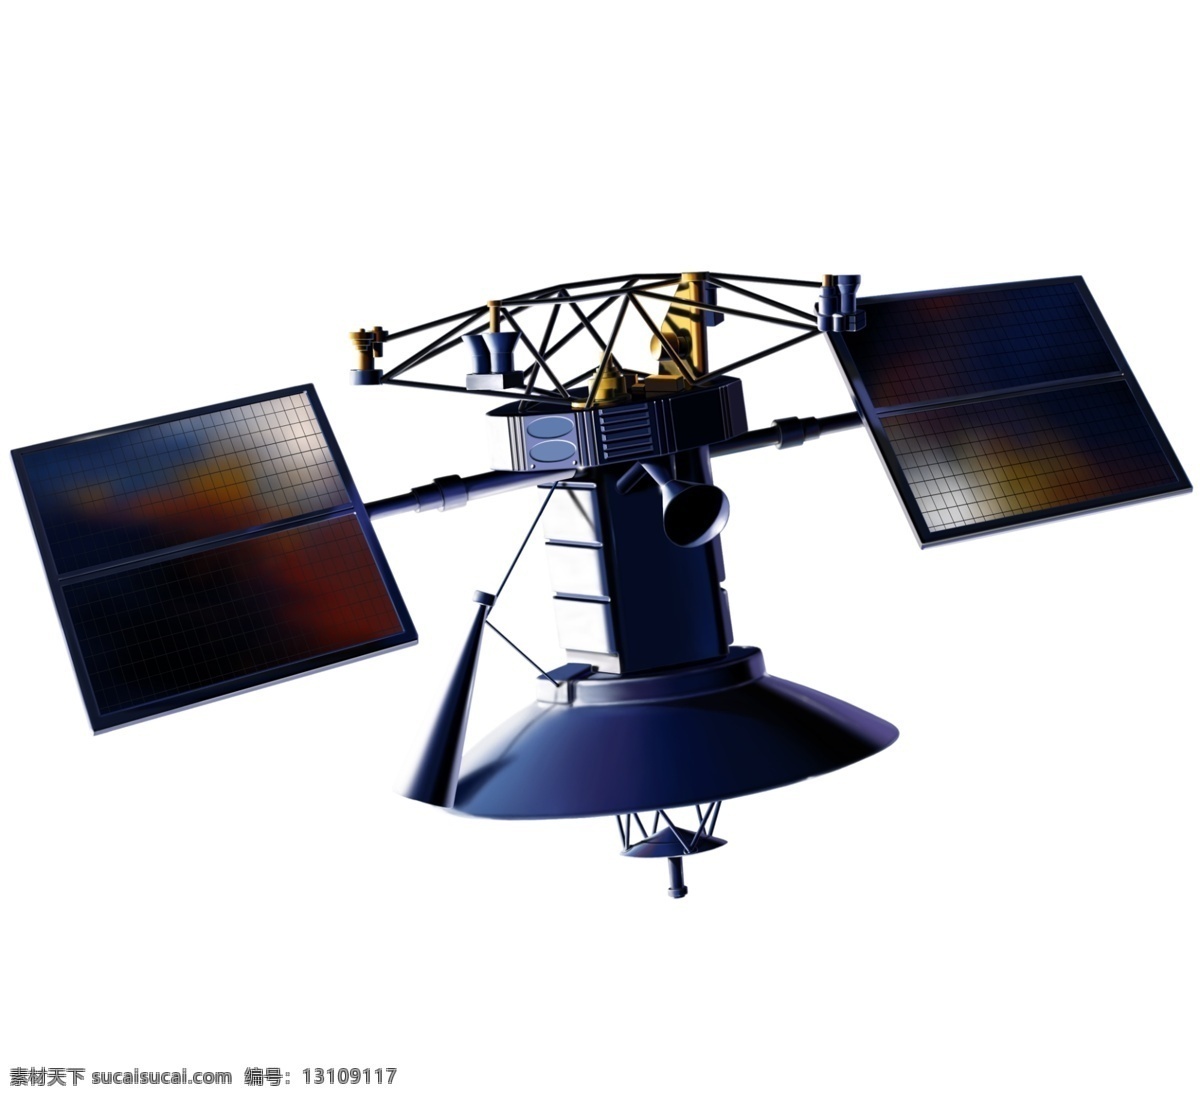 分层 航空 航天 军事科技 科技 太阳能板 探索 卫星 高清 人造卫星 模板下载 人造地球卫星 天线 源文件库 源文件 psd源文件